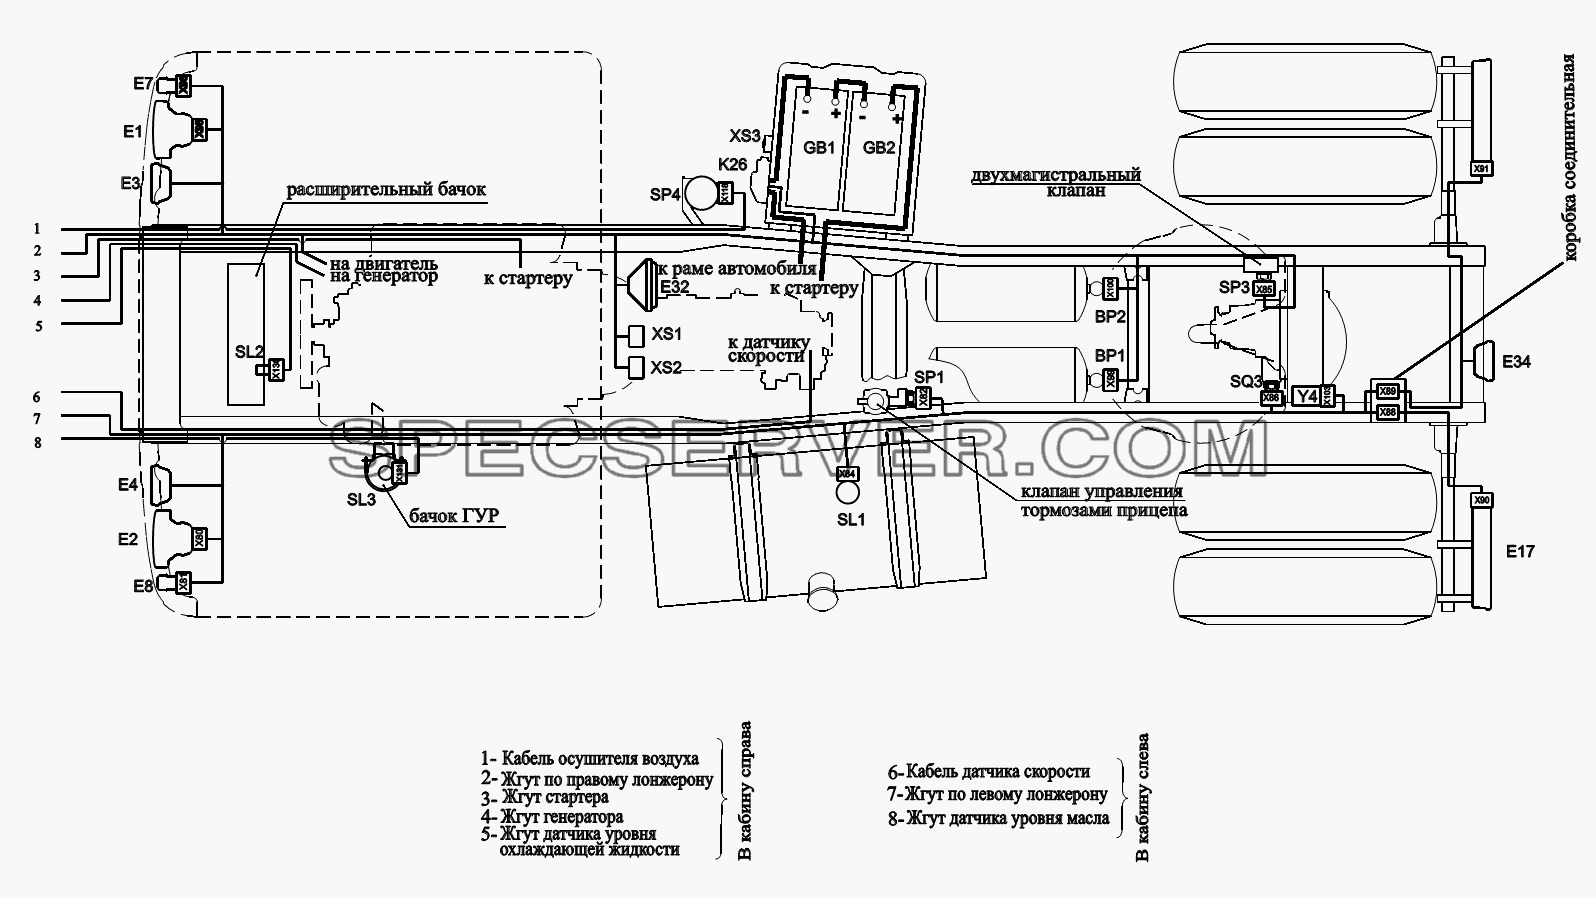 Расположение разъемов и элементов электрооборудования на шасси Автомобилей для МАЗ-6422, 5432 (список запасных частей)